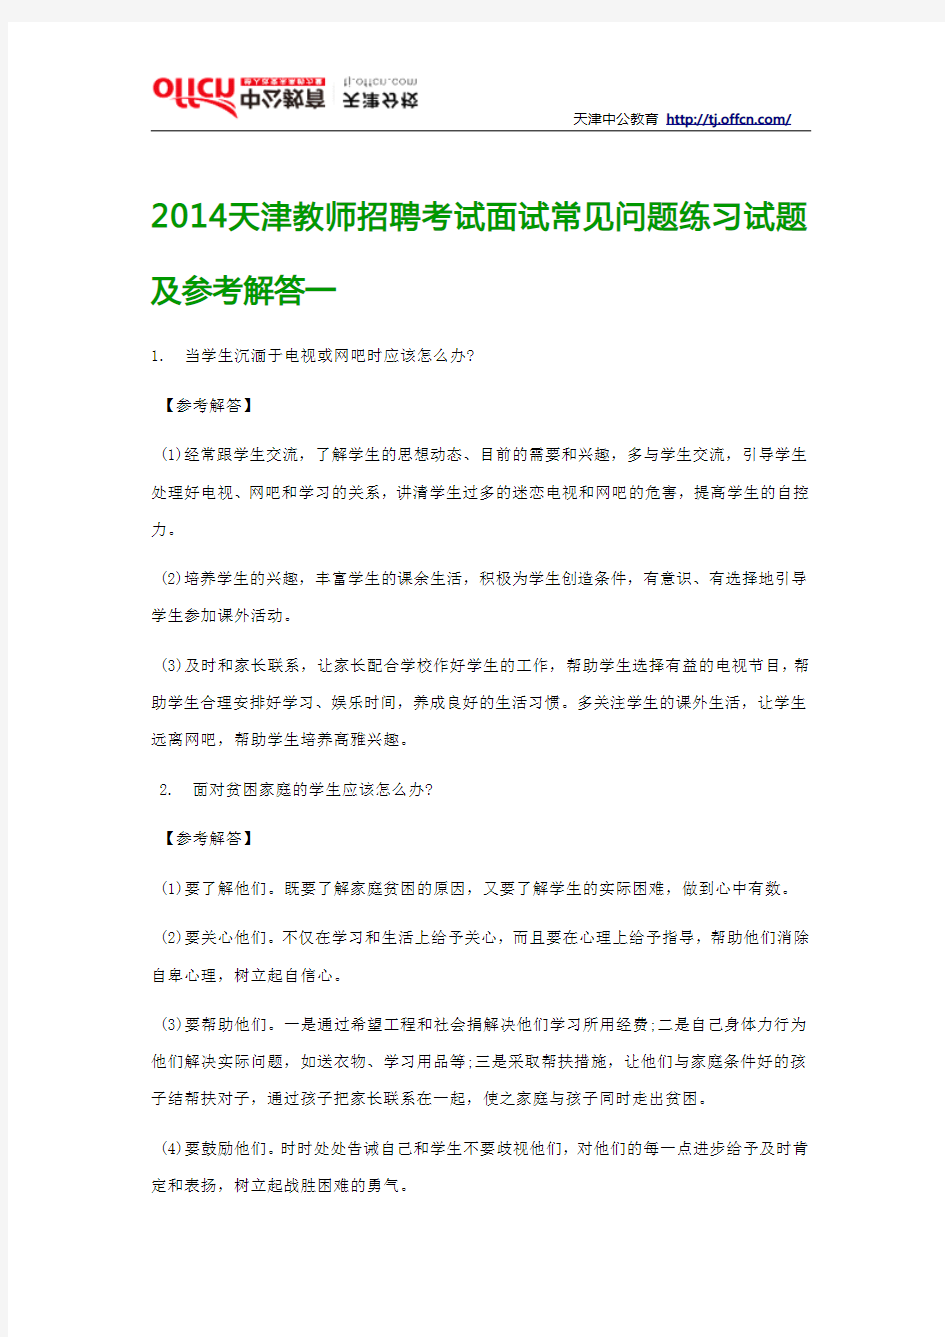 2014天津教师招聘考试面试常见问题练习试题及参考解答一